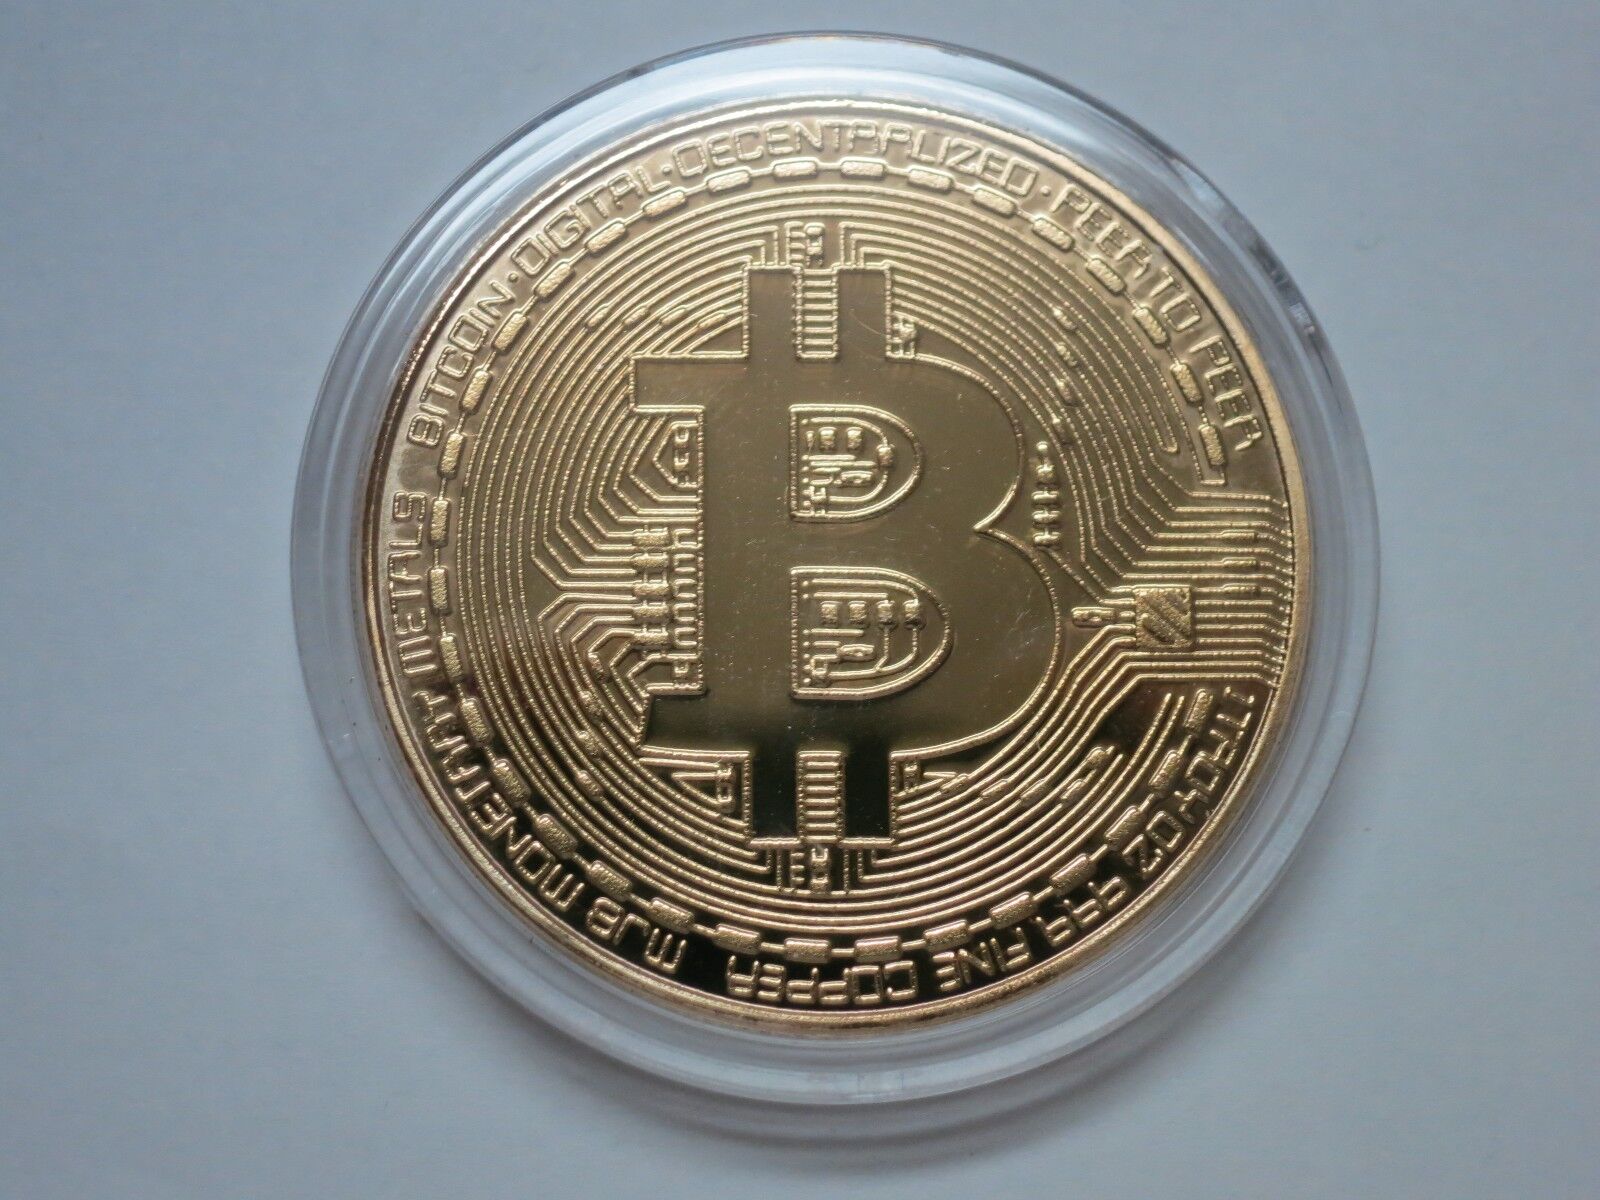 Casascius physical bitcoins - Bitcoin Wiki